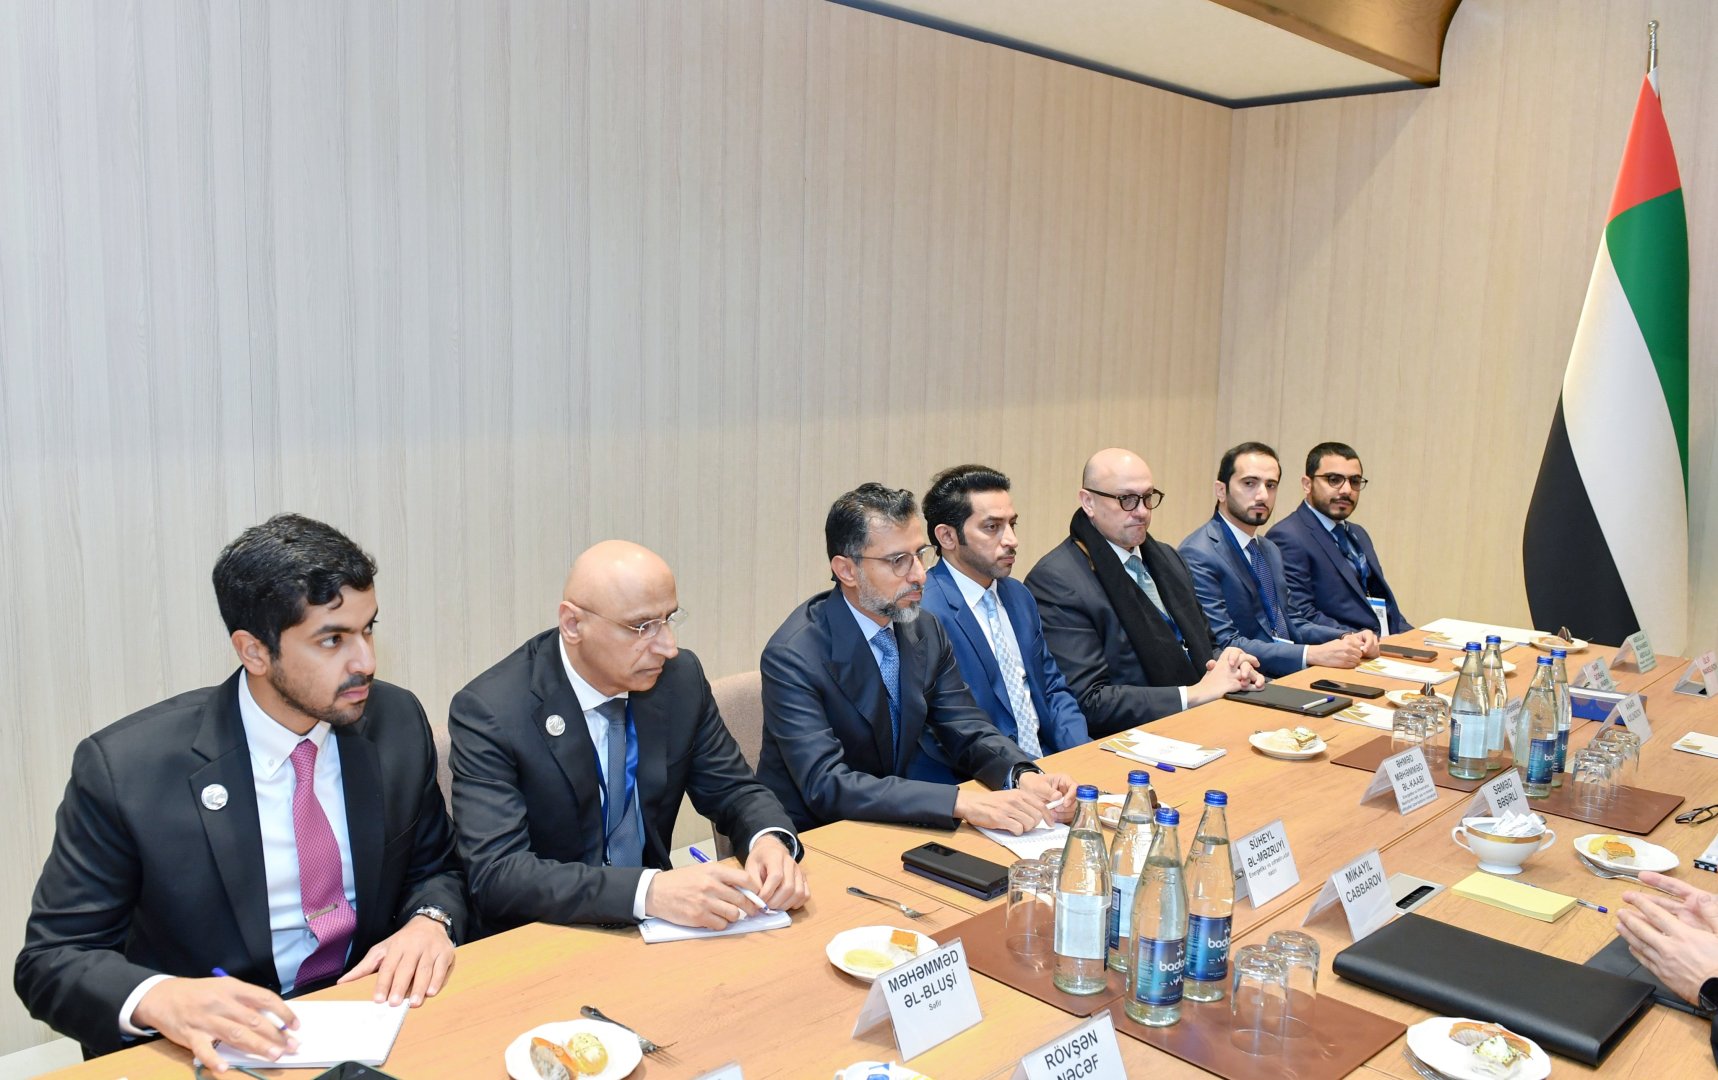 Азербайджан и ОАЭ обсудили потенциальные области сотрудничества в рамках COP29 (ФОТО)